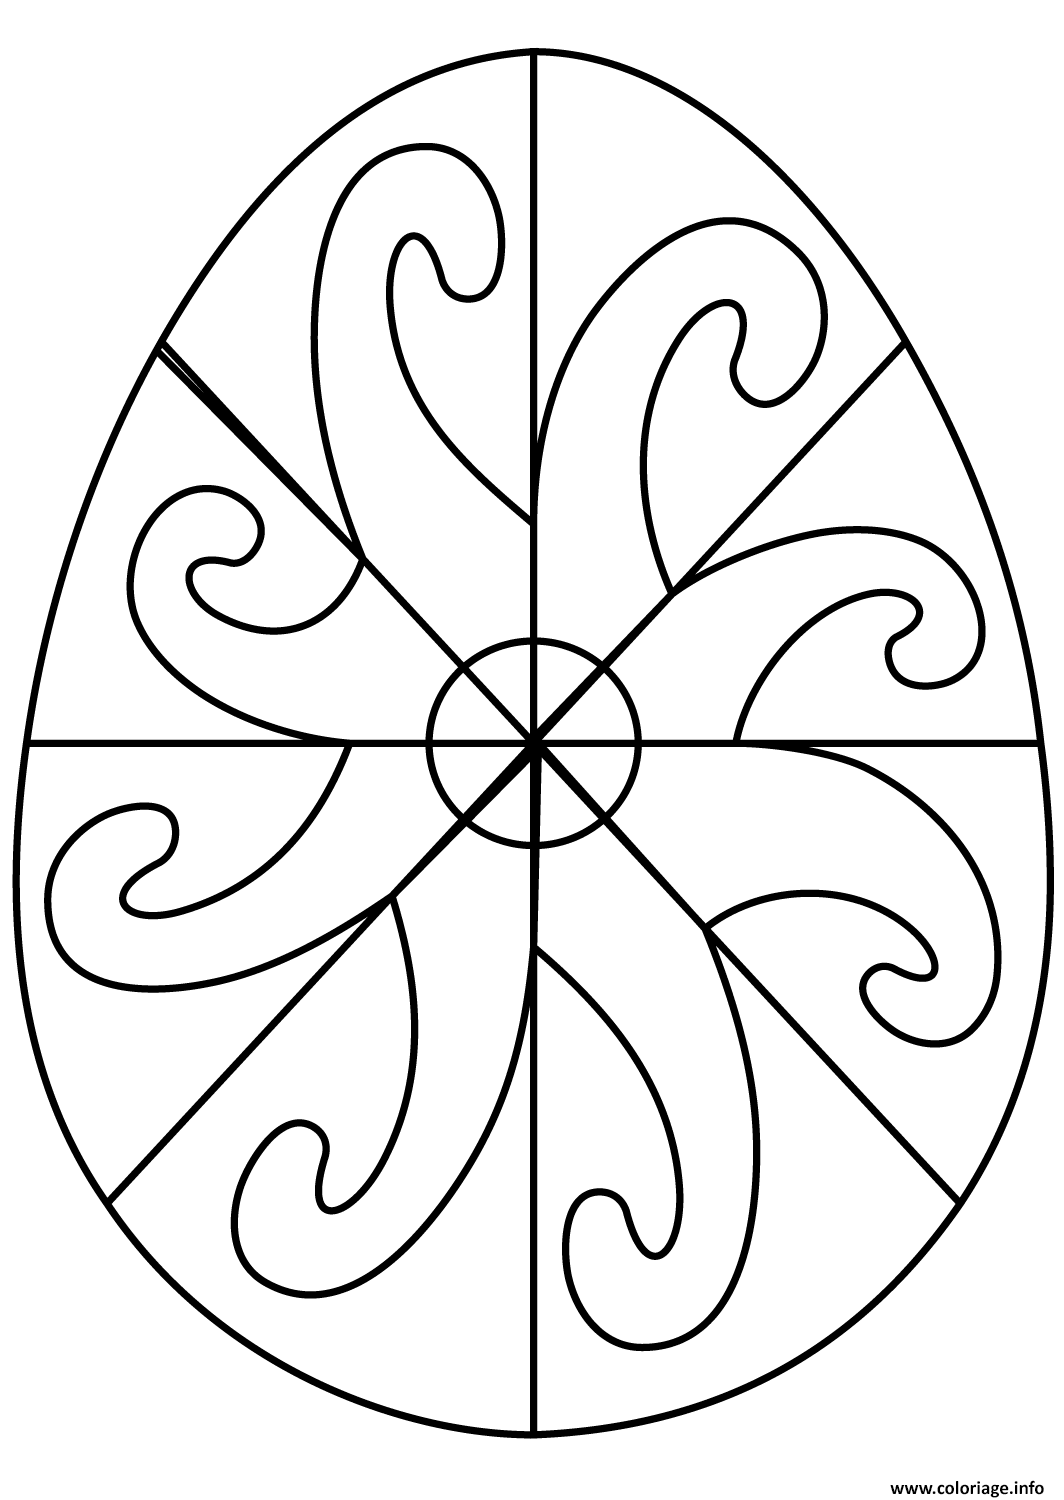 Dessin oeuf de paques avec spiral pattern Coloriage Gratuit à Imprimer